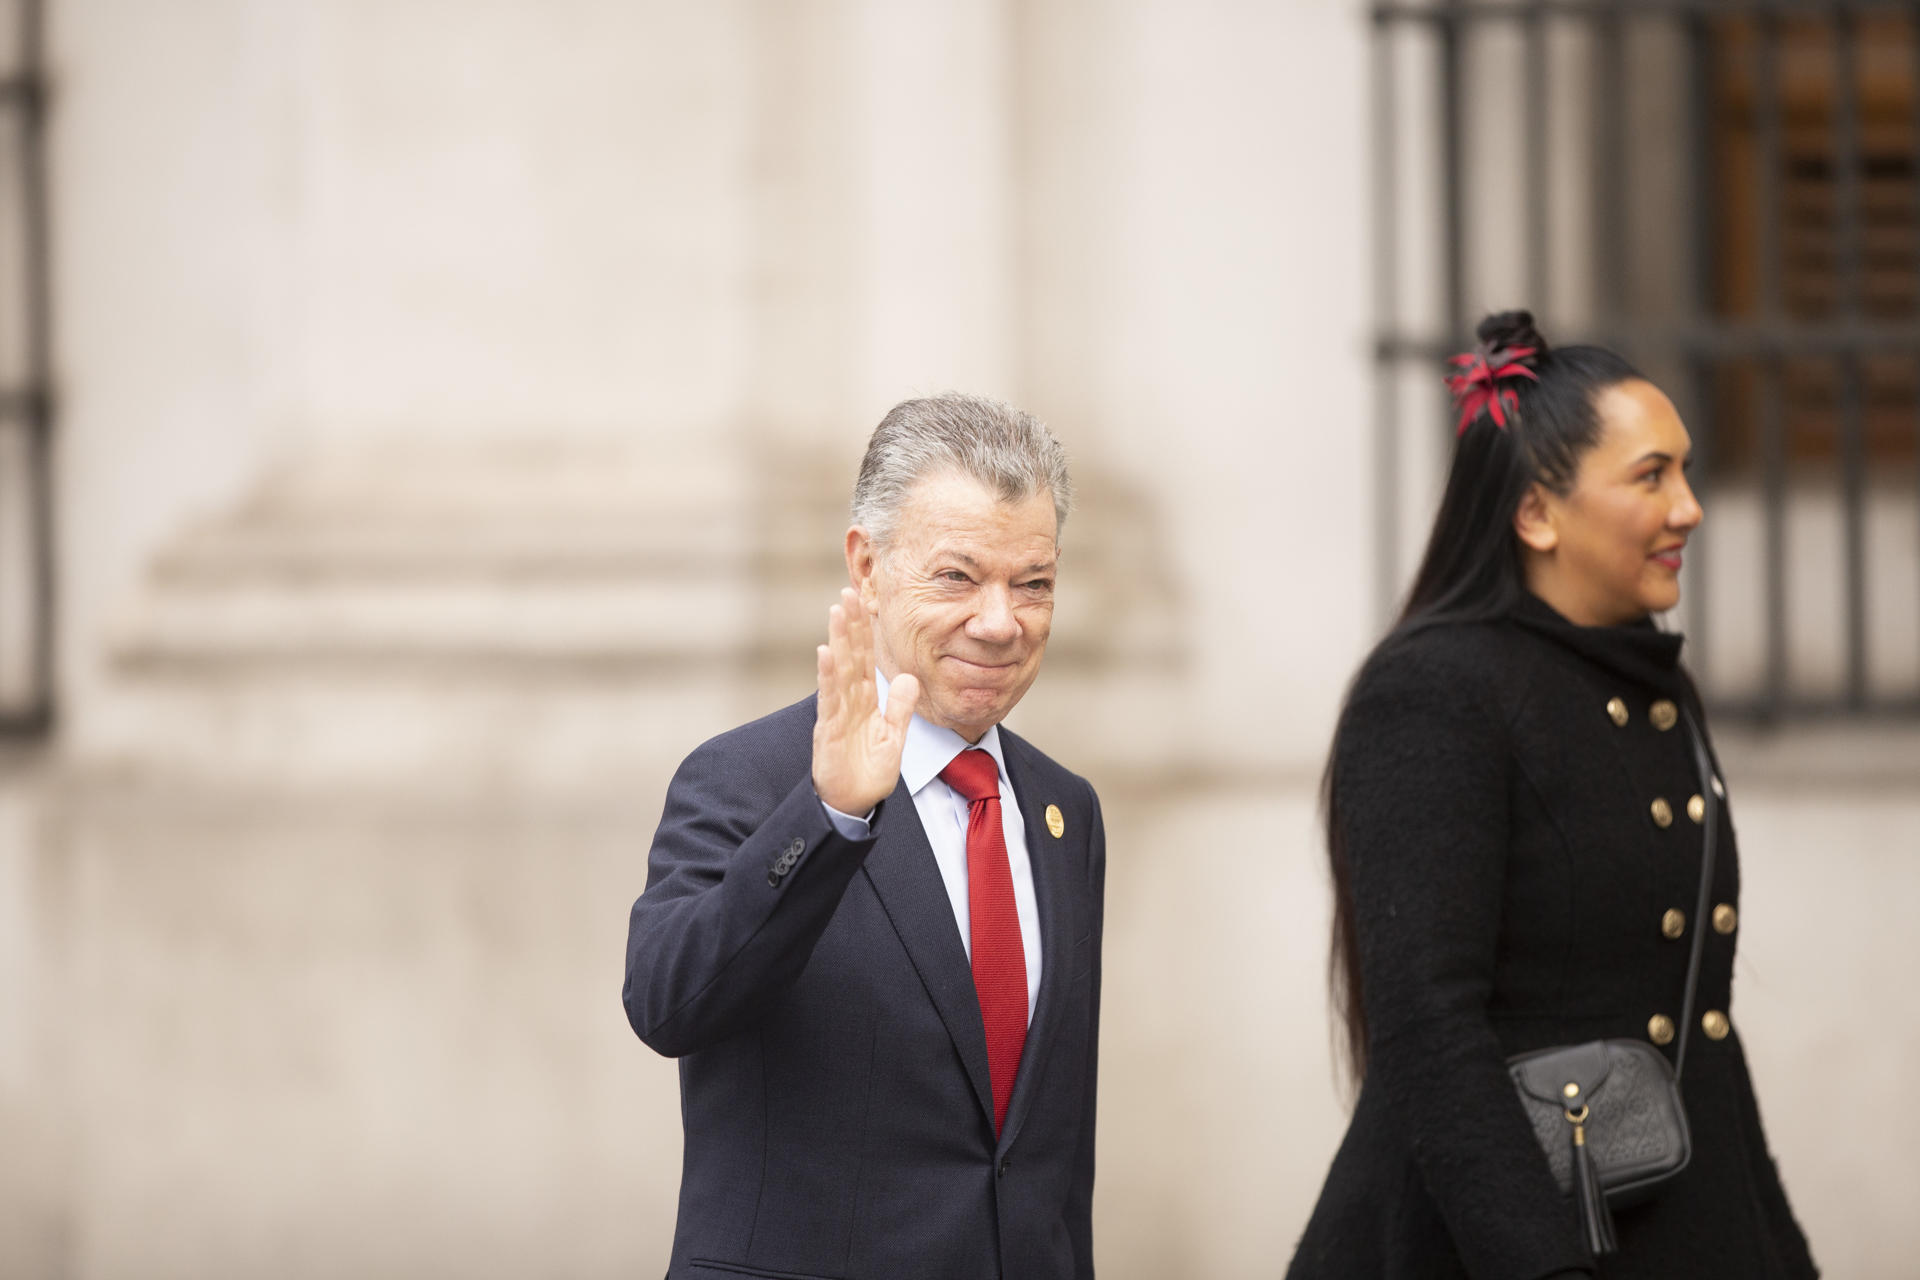 El expresidente de Colombia Juan Manuel Santos llega para participar en el acto oficial de la conmemoración de los 50 años del golpe de Estado, hoy, en el Palacio de La Moneda, en Santiago (Chile). EFE/ Adriana Thomasa